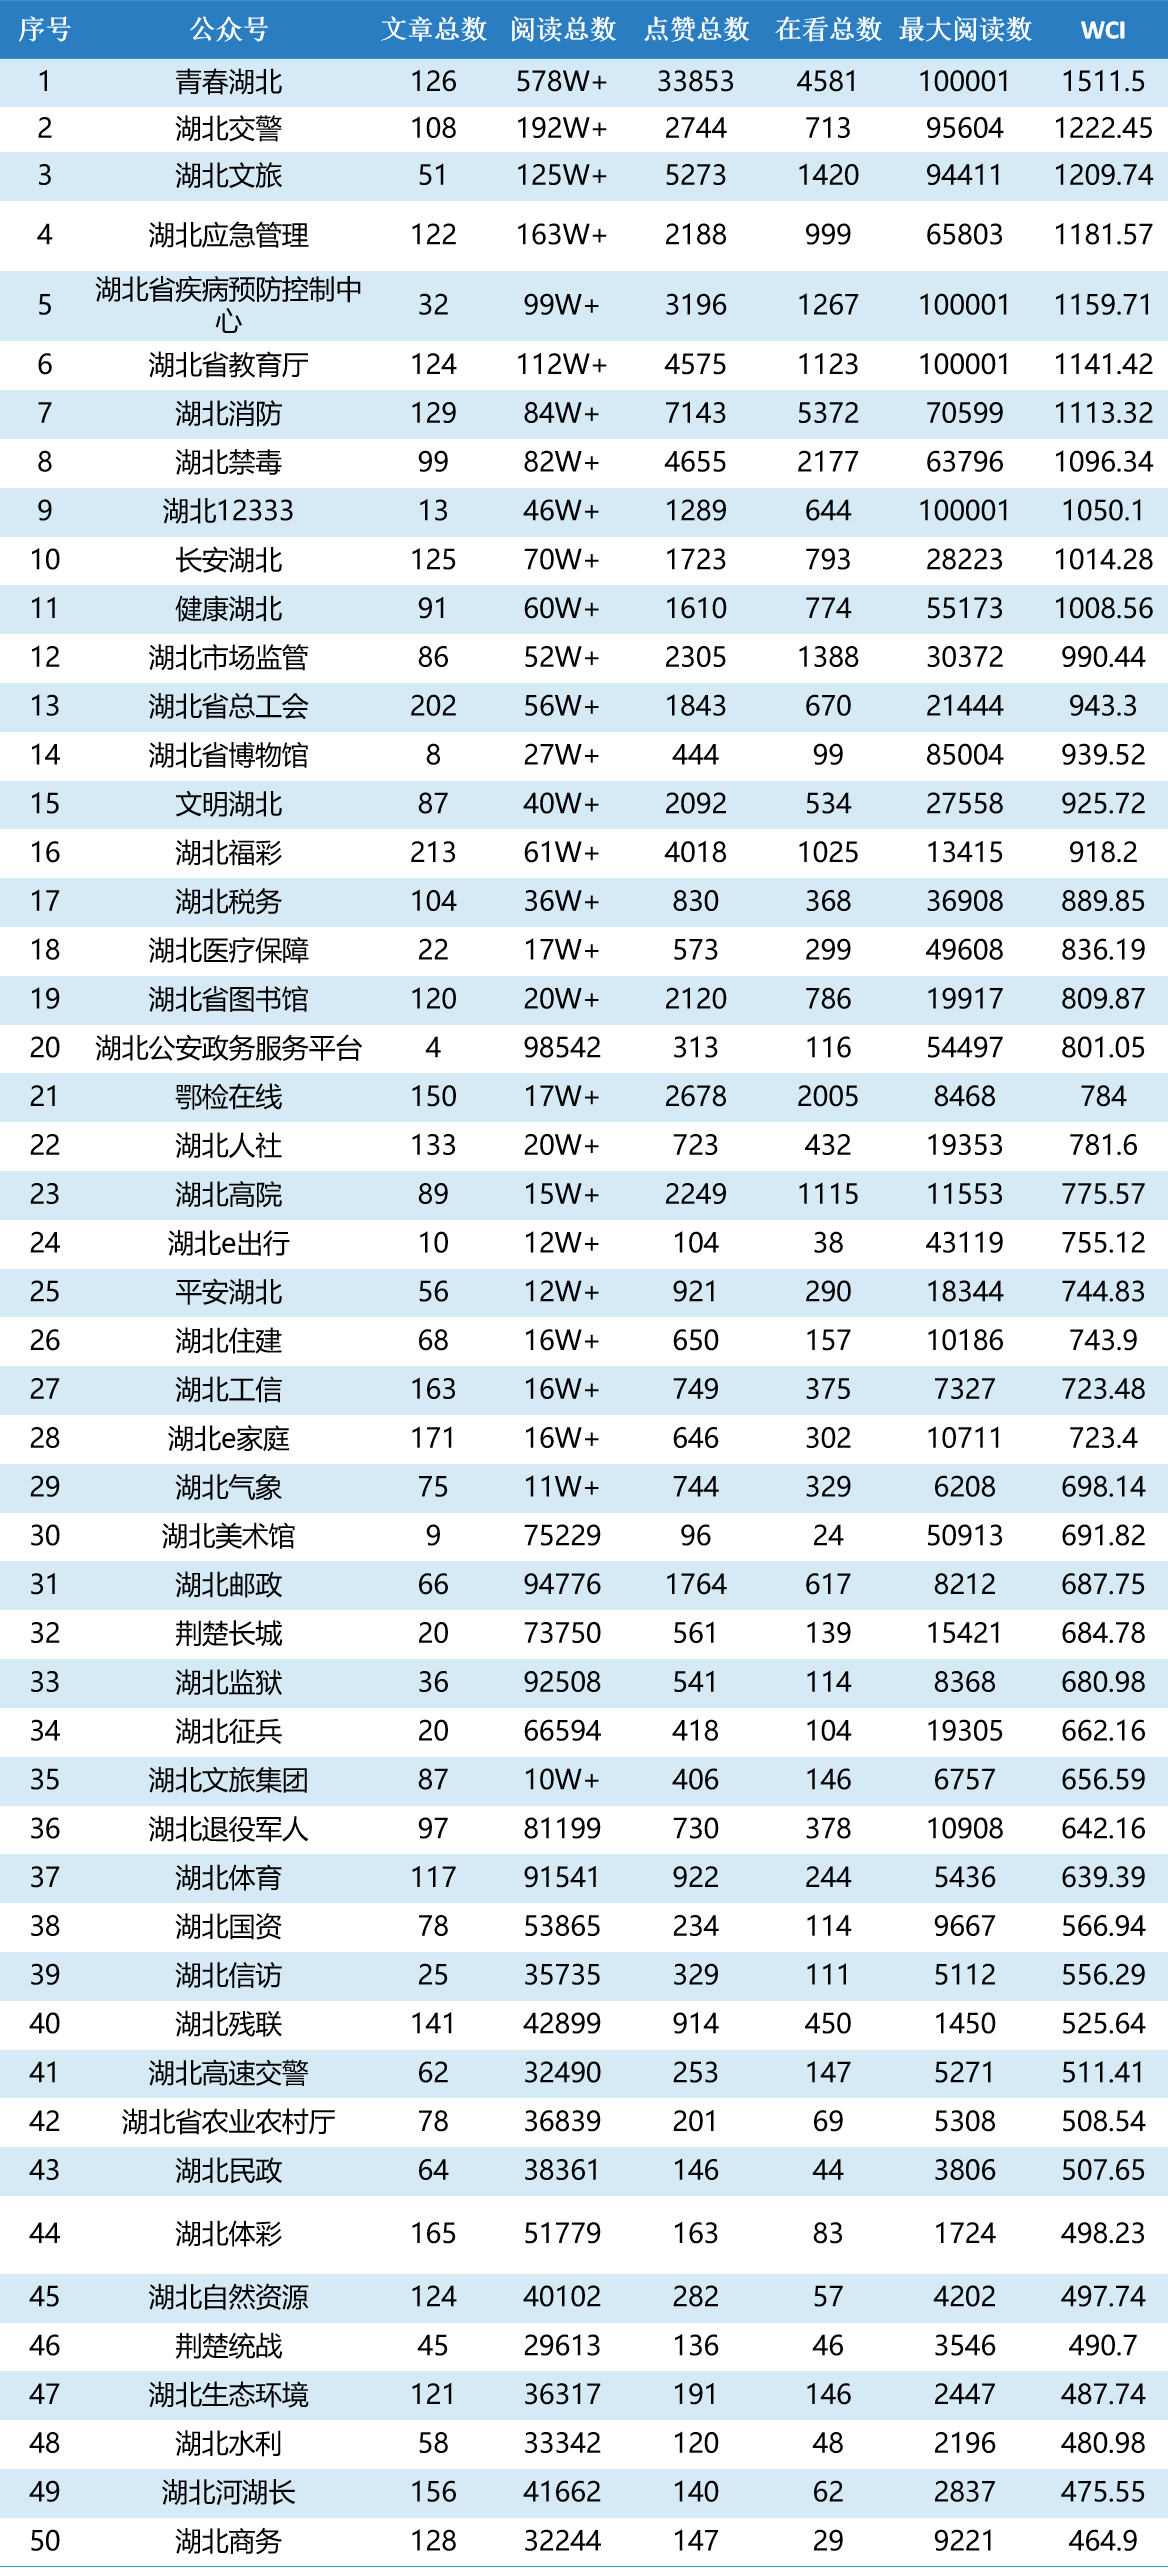 湖北省直微信TOP50榜：“湖北省教育厅”“湖北交警”阅读量大幅增长